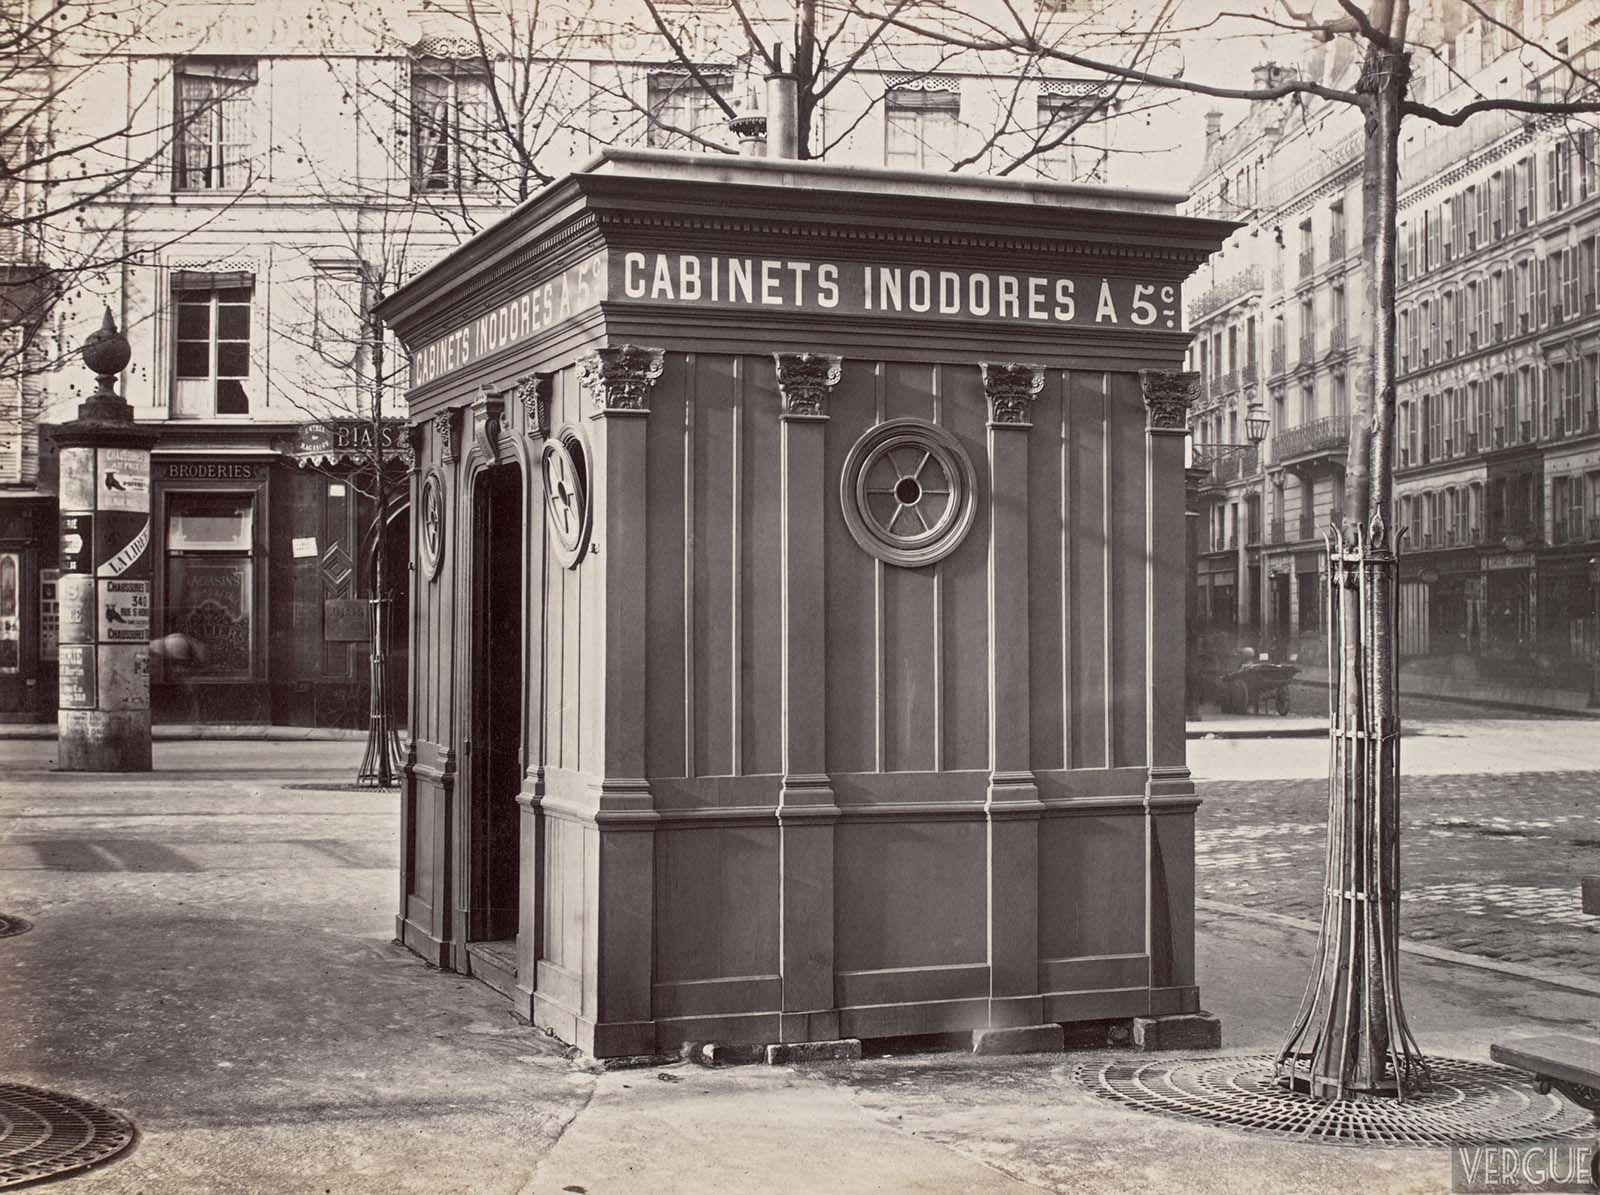 Pissoirs : Les urinoirs publics d'époque de Paris, 1865-1875